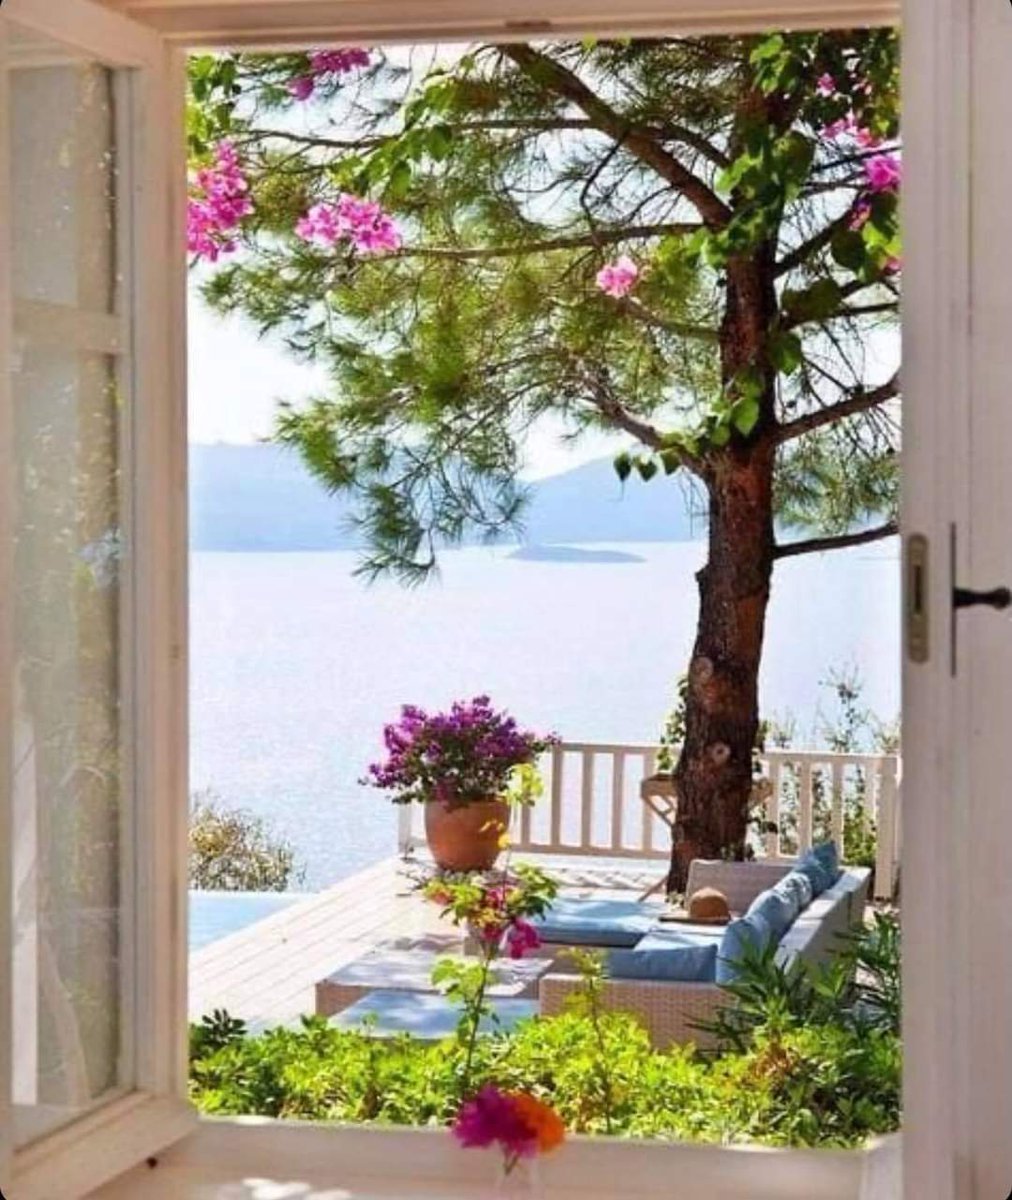 Пейзаж в окне